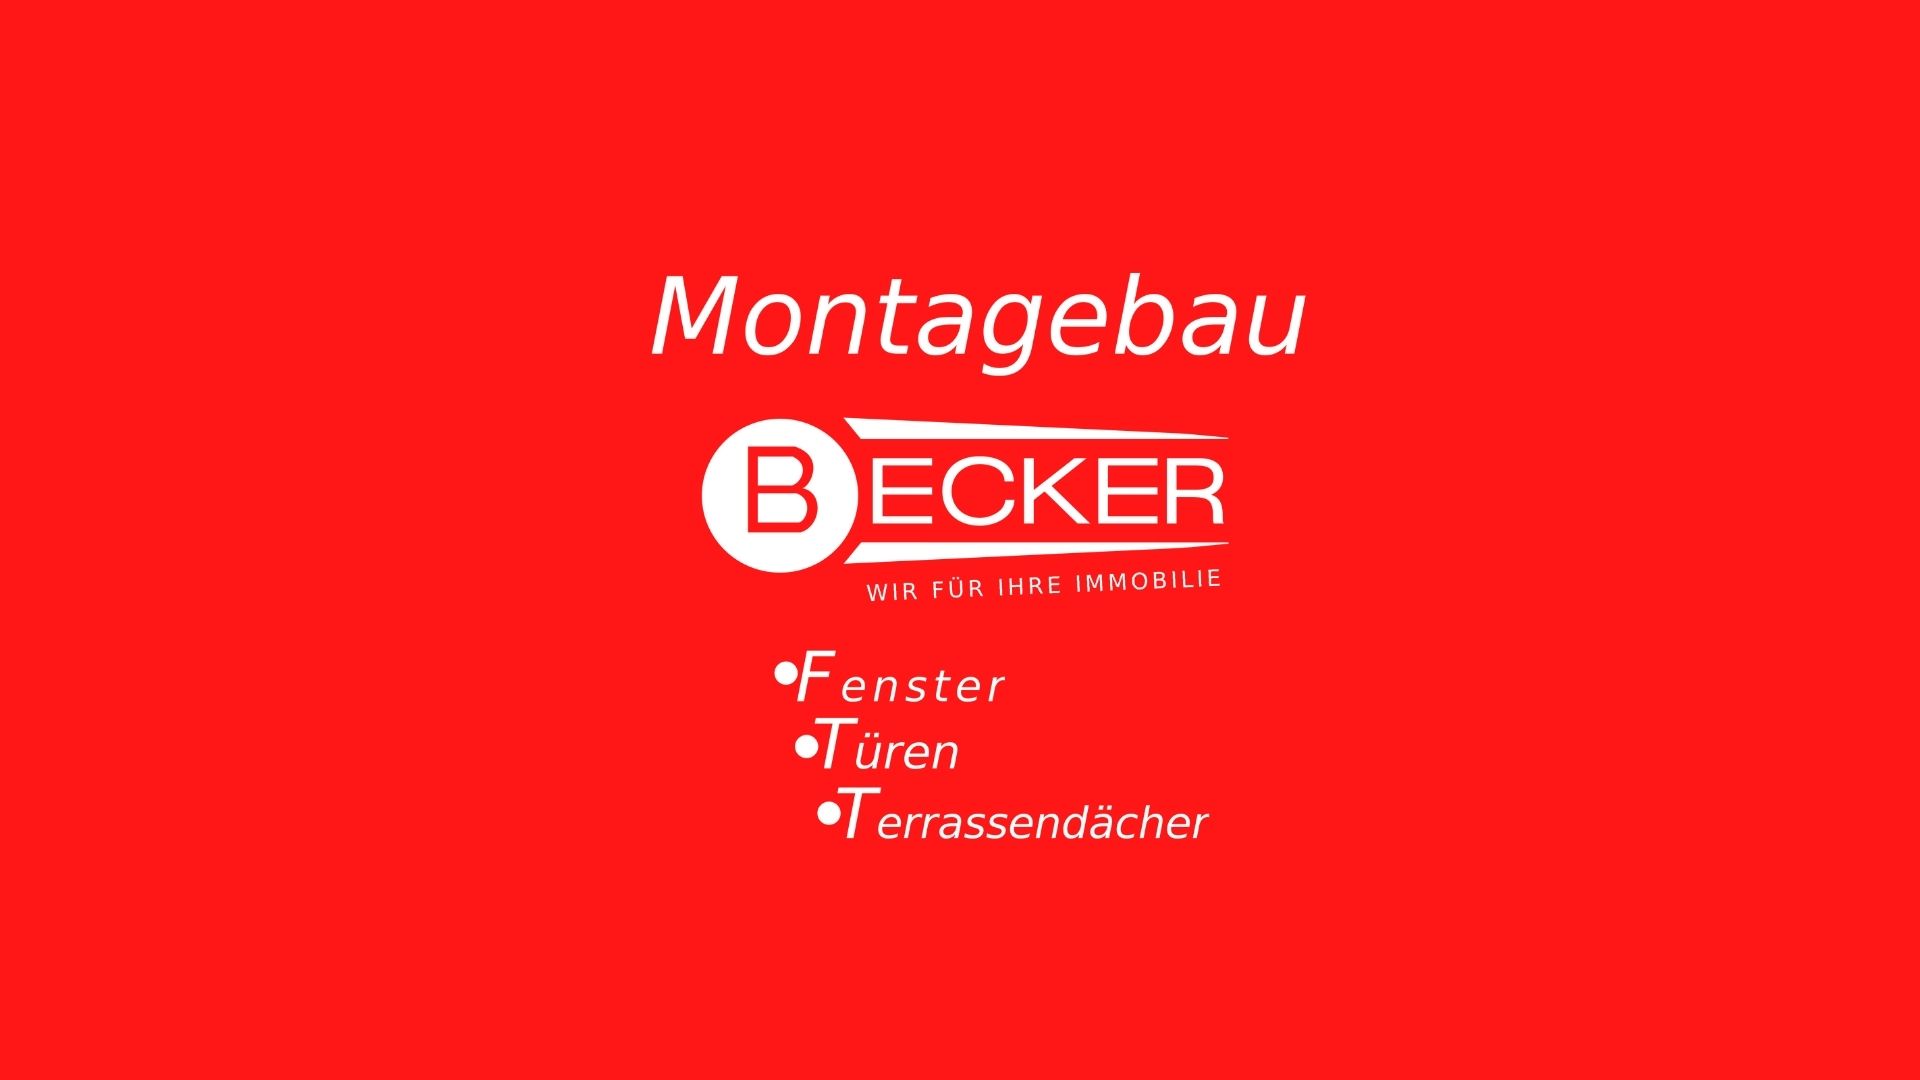 Becker Montagebau